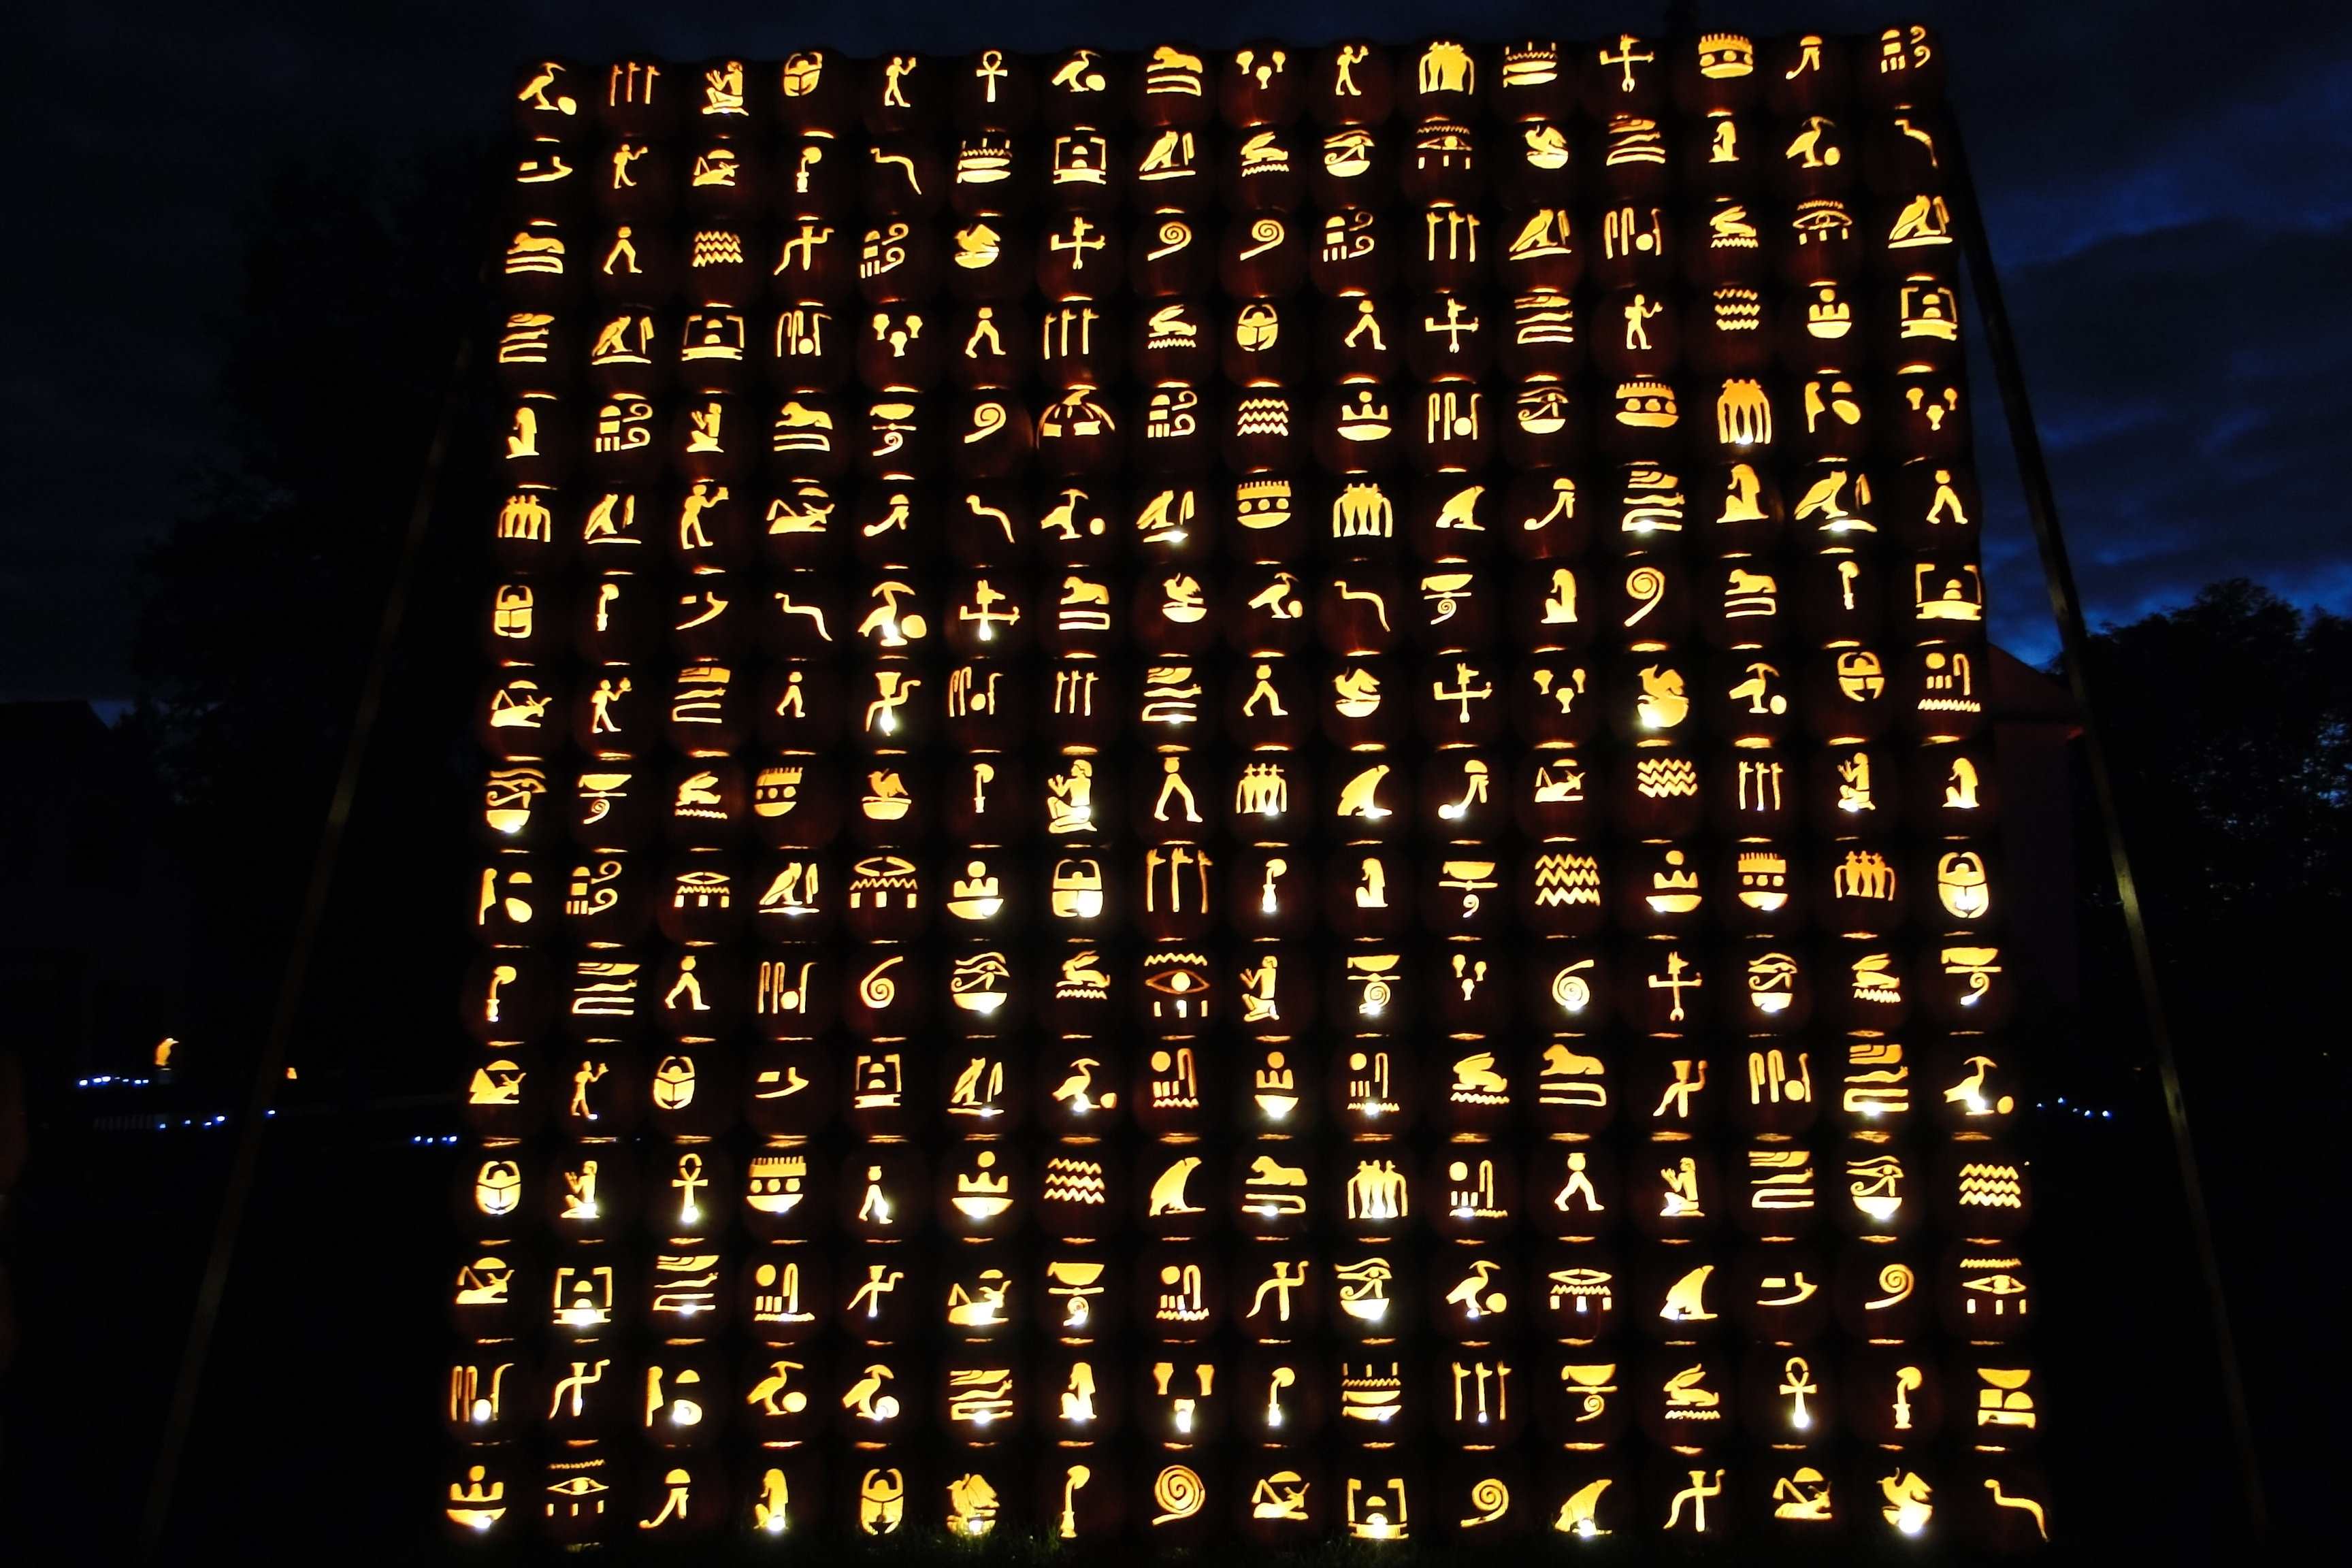 Egyptian Hieroglyphics Image Thecelebritypix